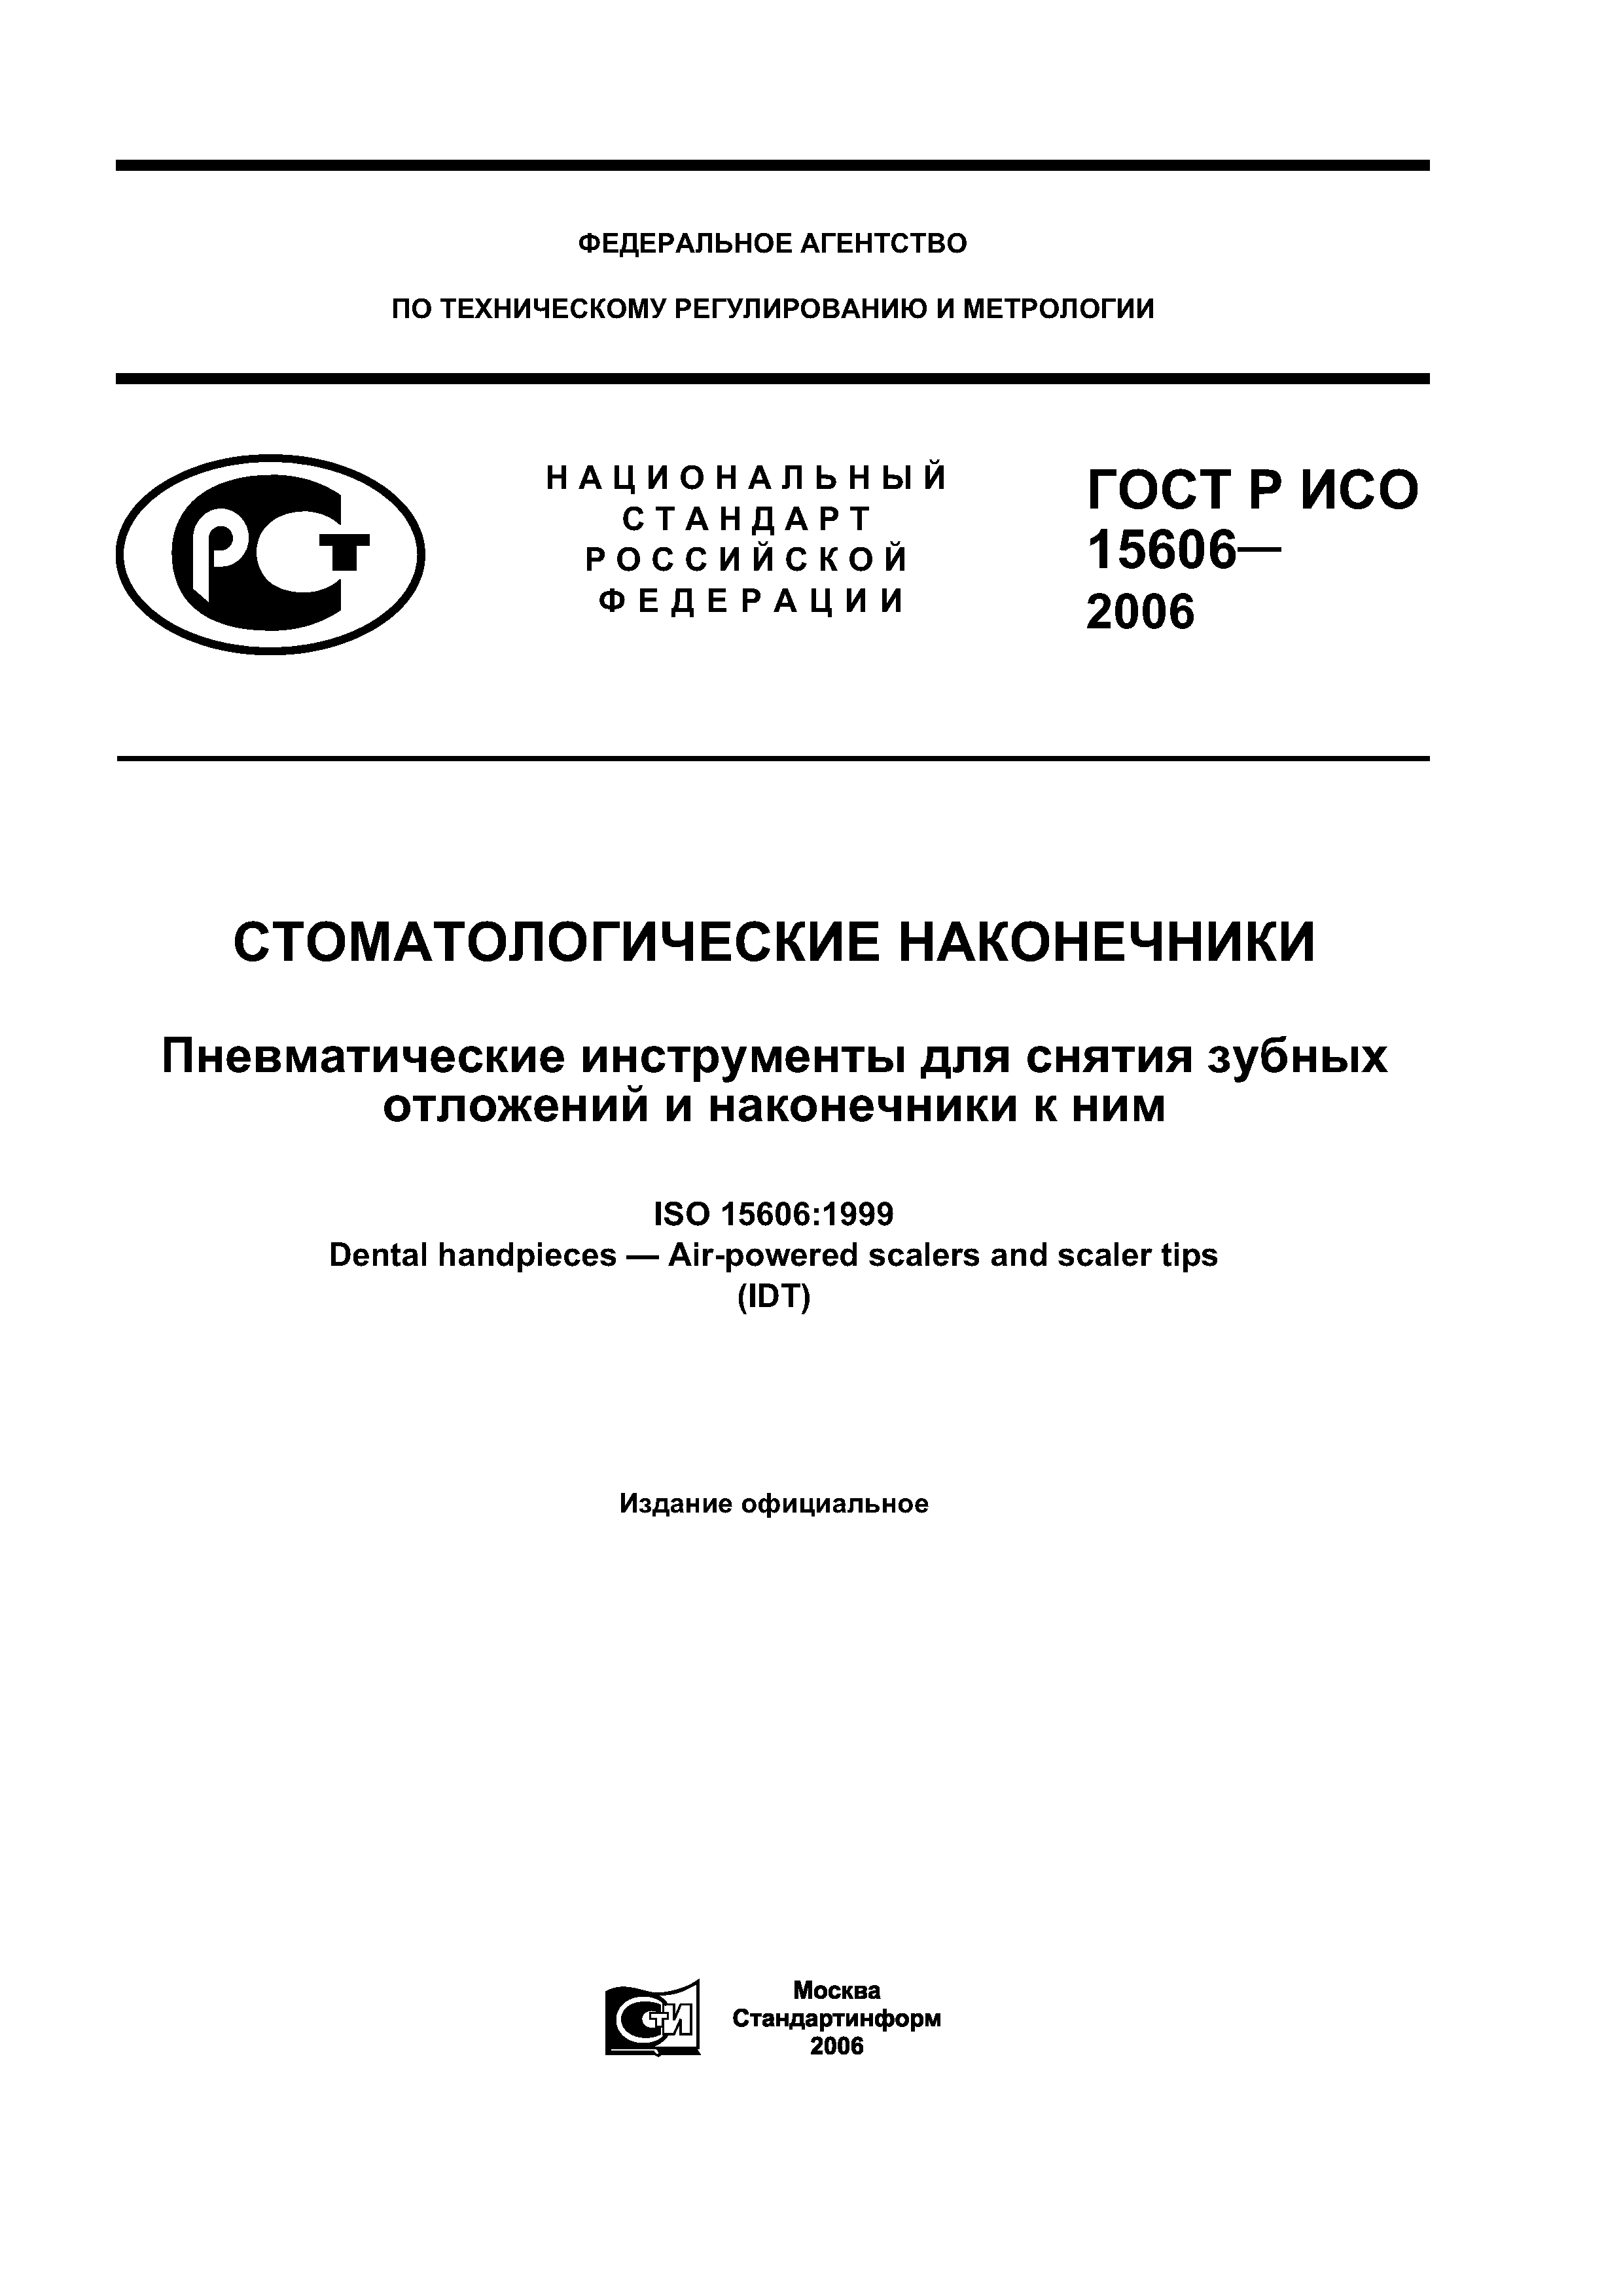 ГОСТ Р ИСО 15606-2006